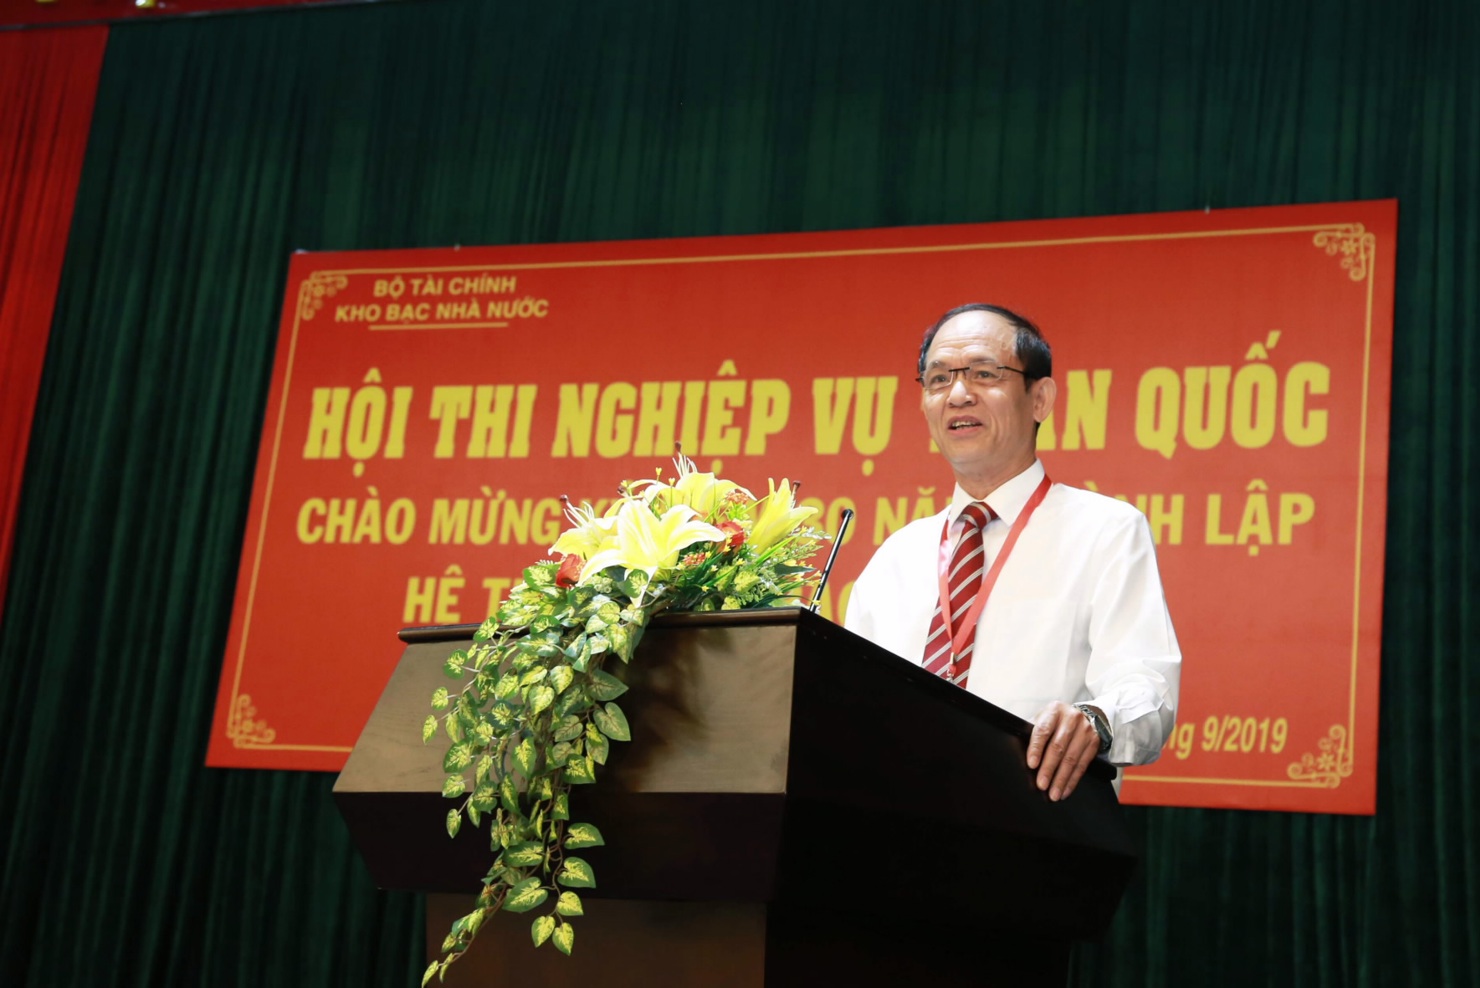 Ông Nguyễn Việt Hồng, Phó Tổng Giám đốc KBNN, Chủ tịch Hội đồng thi phát biểu bế mạc Hội thi nghiệp vụ toàn quốc